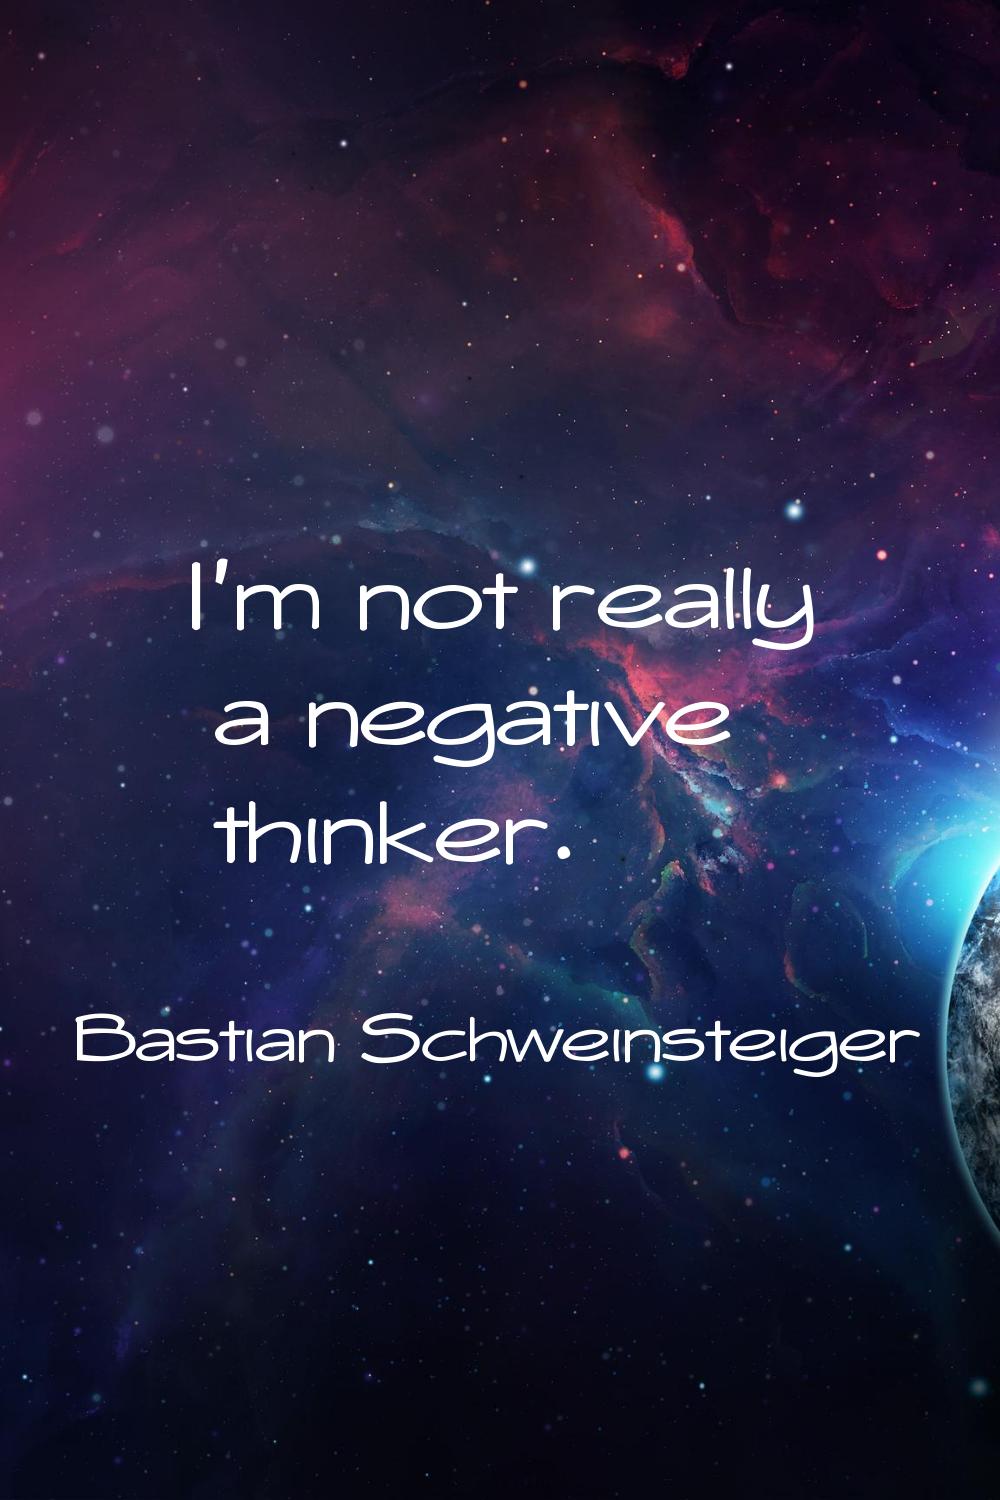 I'm not really a negative thinker.